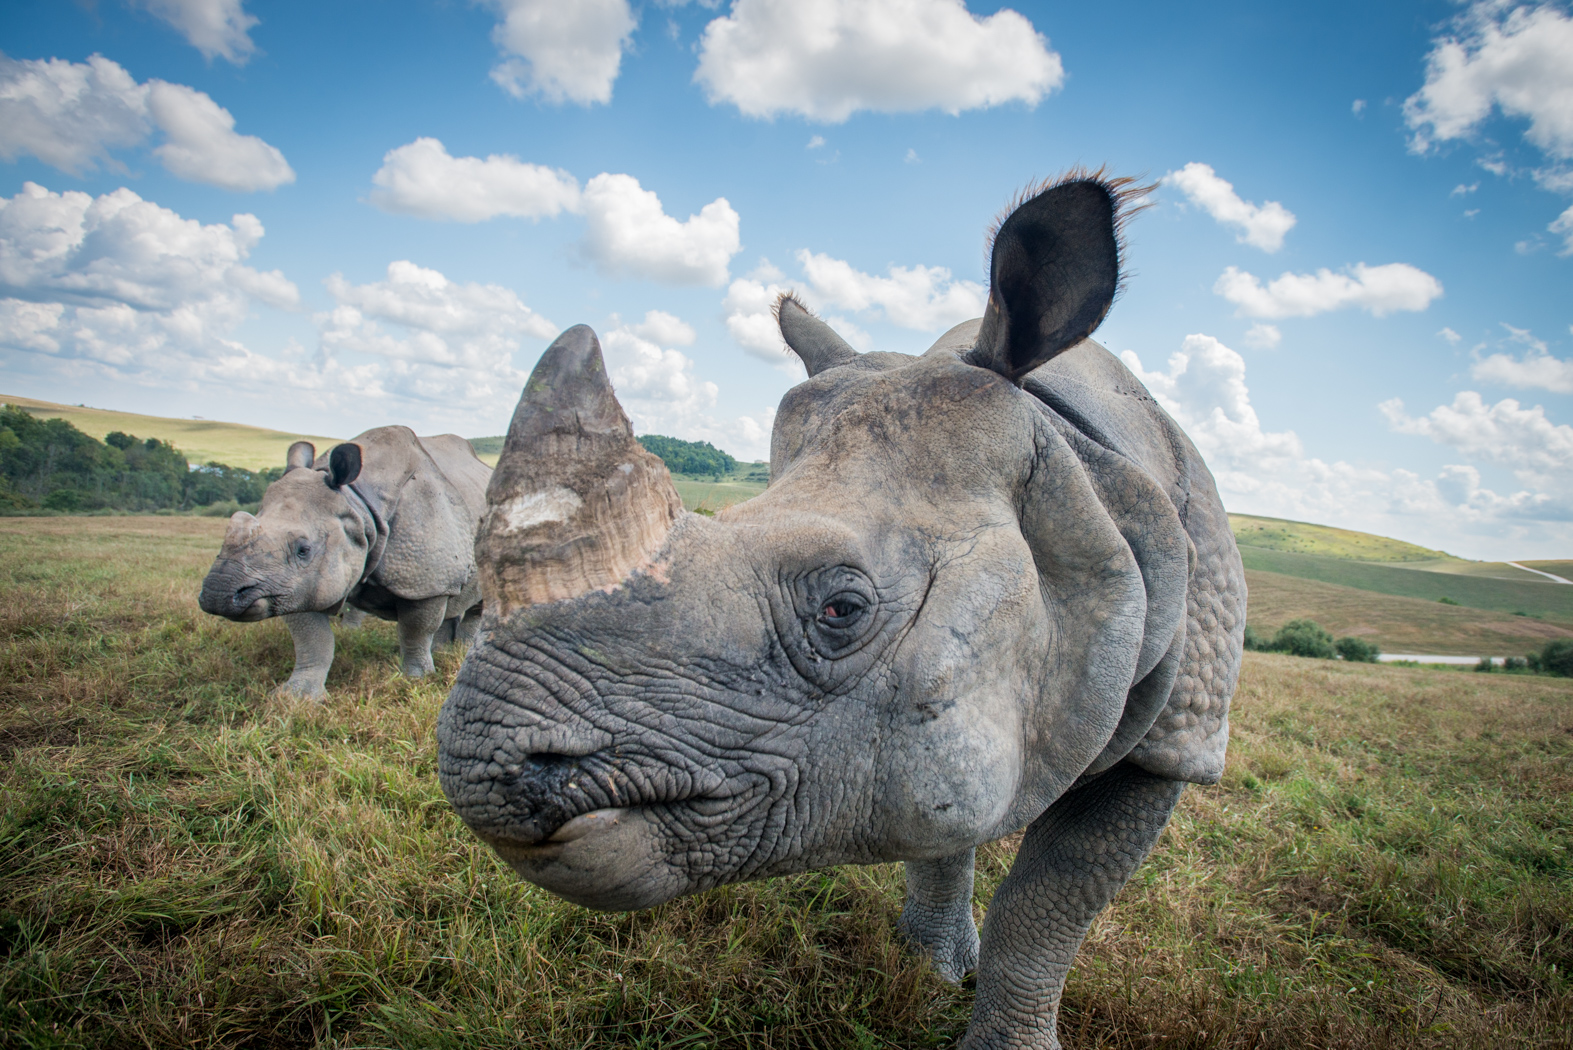 Great rhino